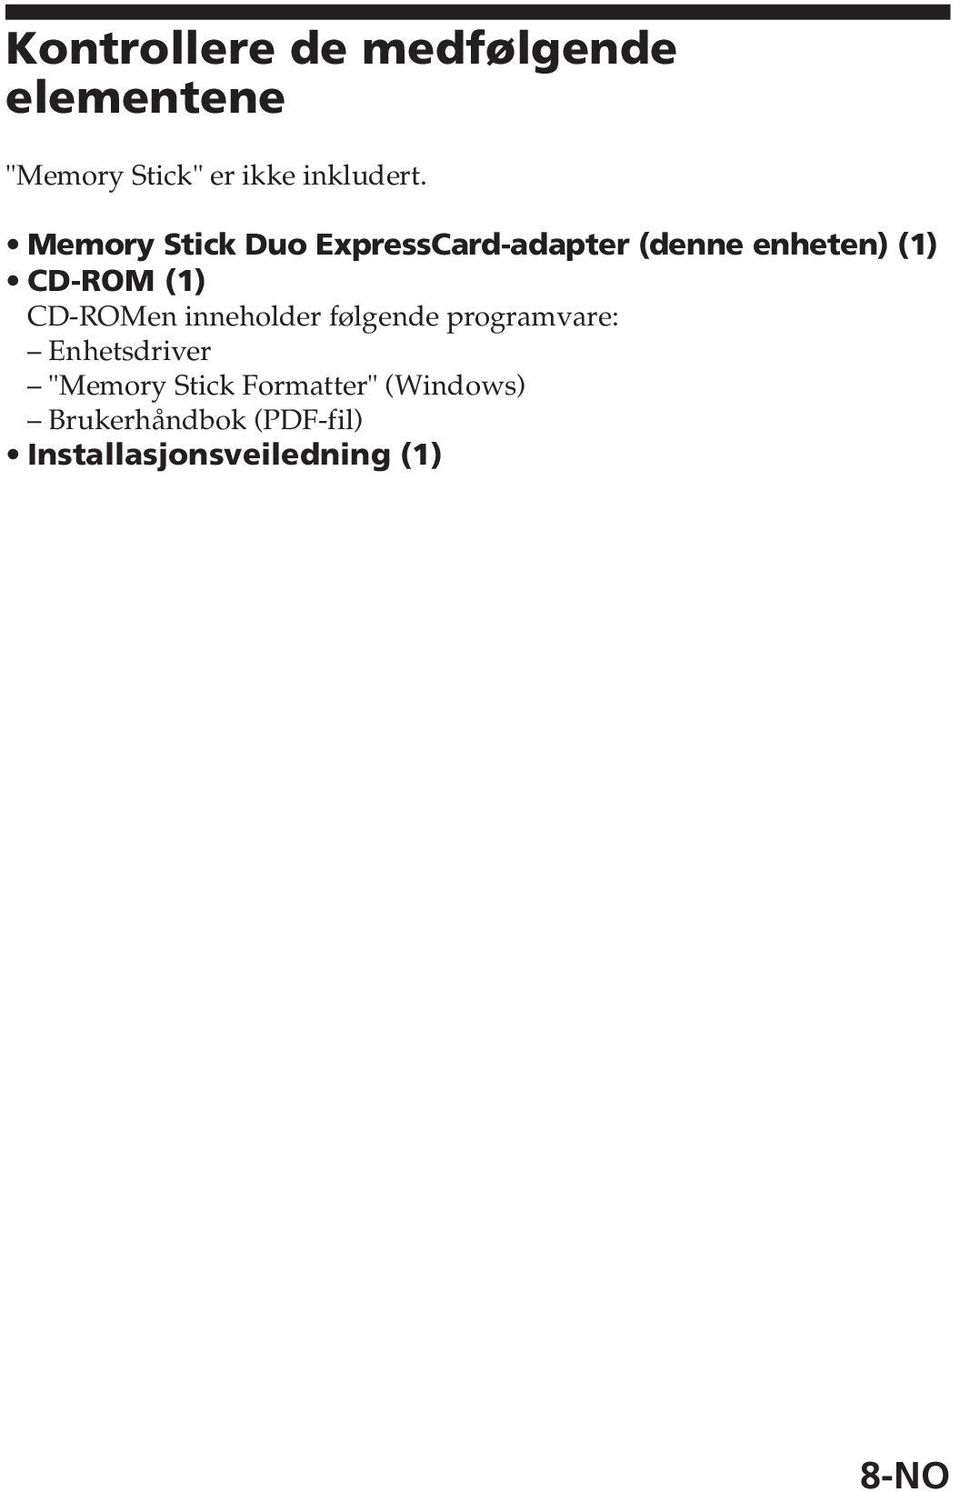 CD-ROMen inneholder følgende programvare: Enhetsdriver "Memory Stick